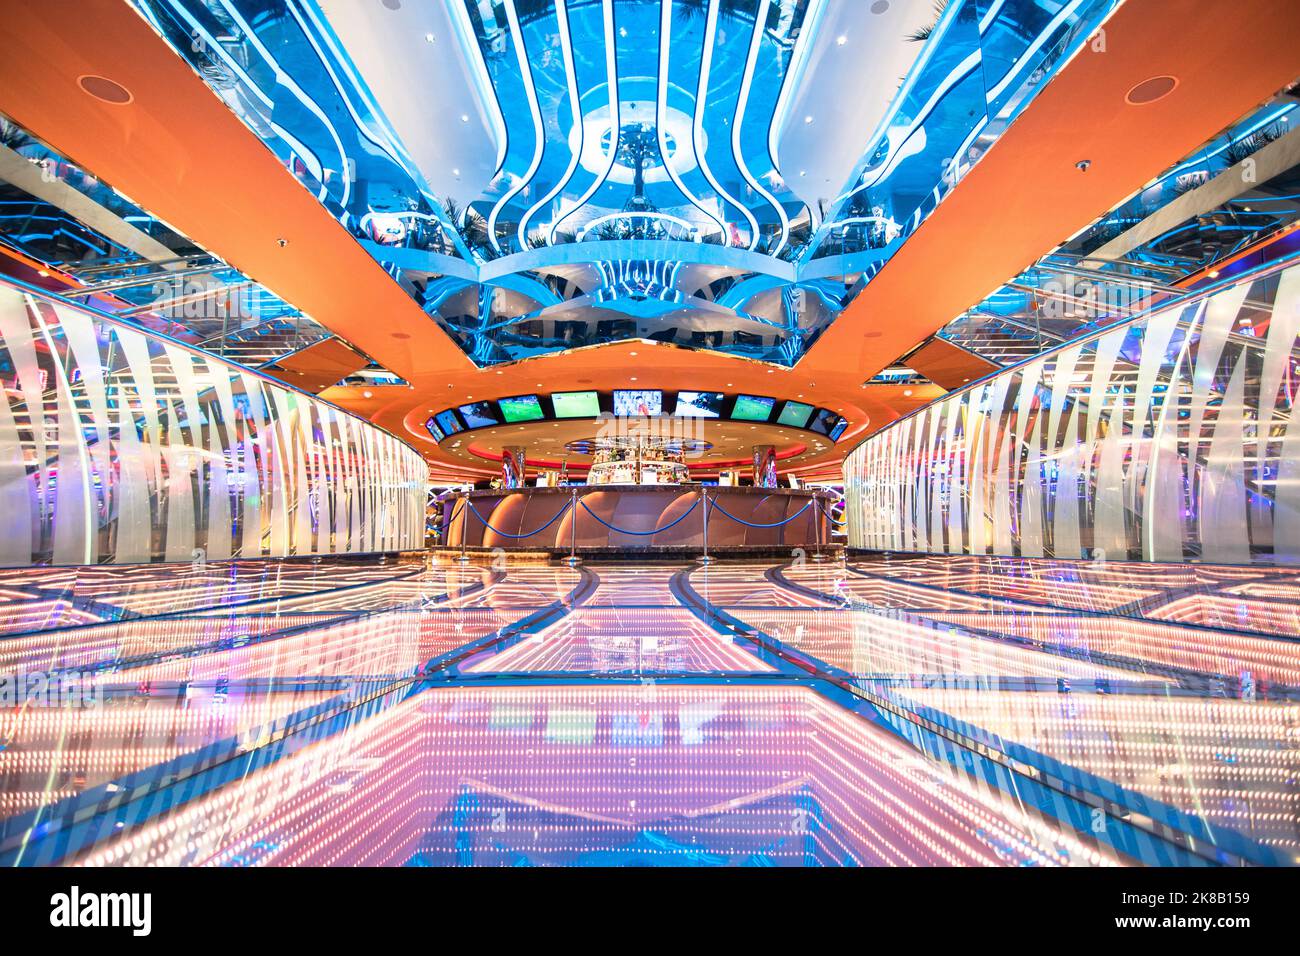 Vue du casino à l'intérieur du navire de croisière MSC Seaside, navire de croisière de la compagnie MSC Croisières le 15 juillet 2021. Stock Photo